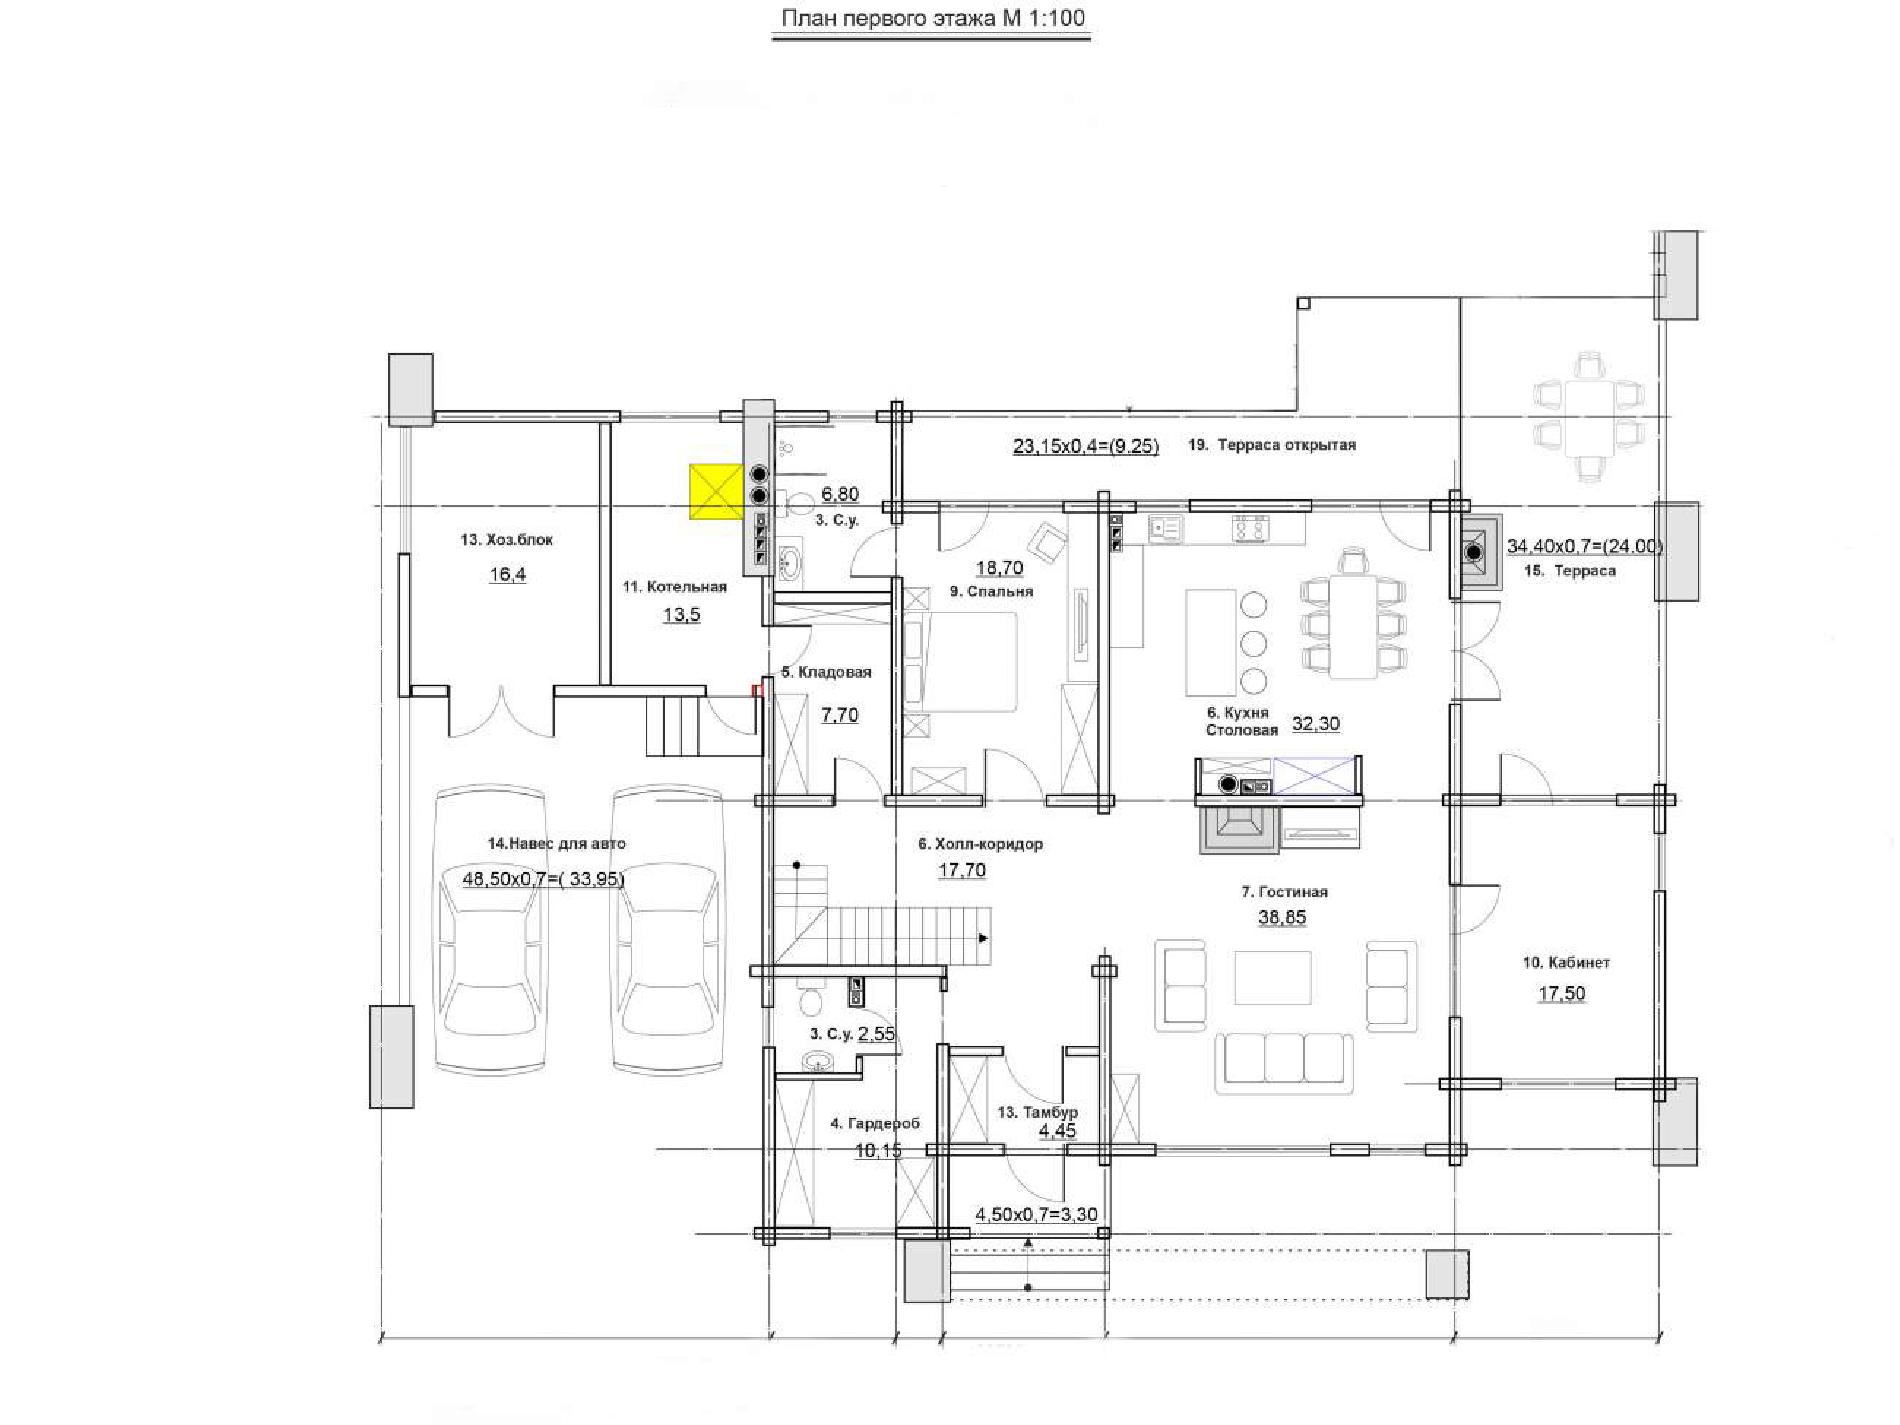 Планировка проекта дома №rh-459 rh-459 (1)p.jpg